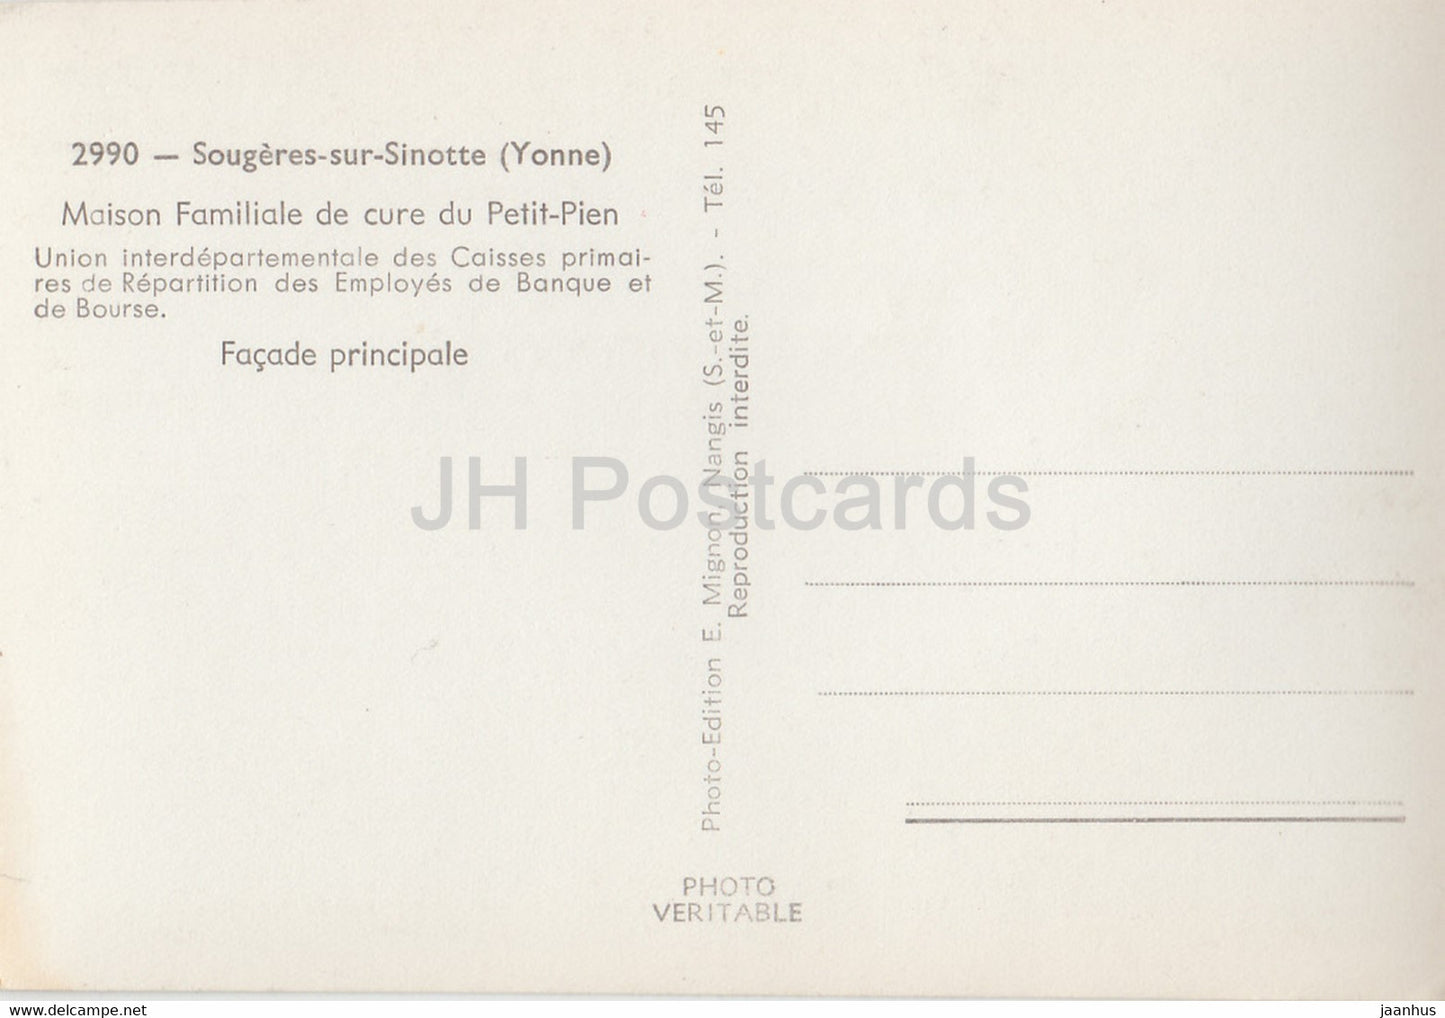 Sougeres sur Sinotte - Maison Familiale de cure du Petit Pien - alte Postkarte - Frankreich - unbenutzt